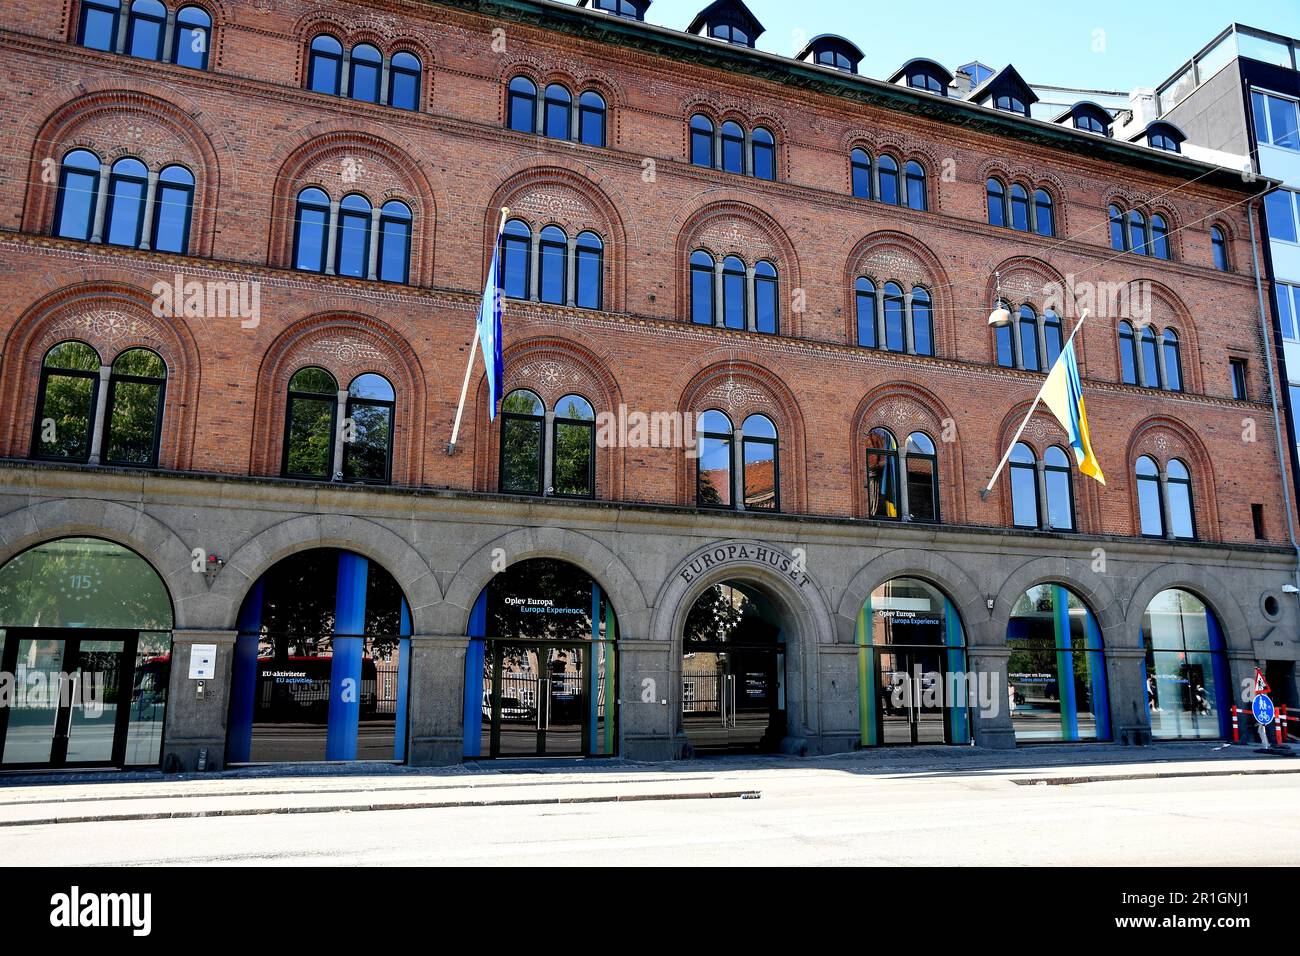 Mai 13,2023/EU und ukrianische Flagge über Europa Huse oder eurpean Uniion House in der dänischen Hauptstadt Kopenhagen. (Foto: Francis Joseph Dean/Dean Pictures) Stockfoto